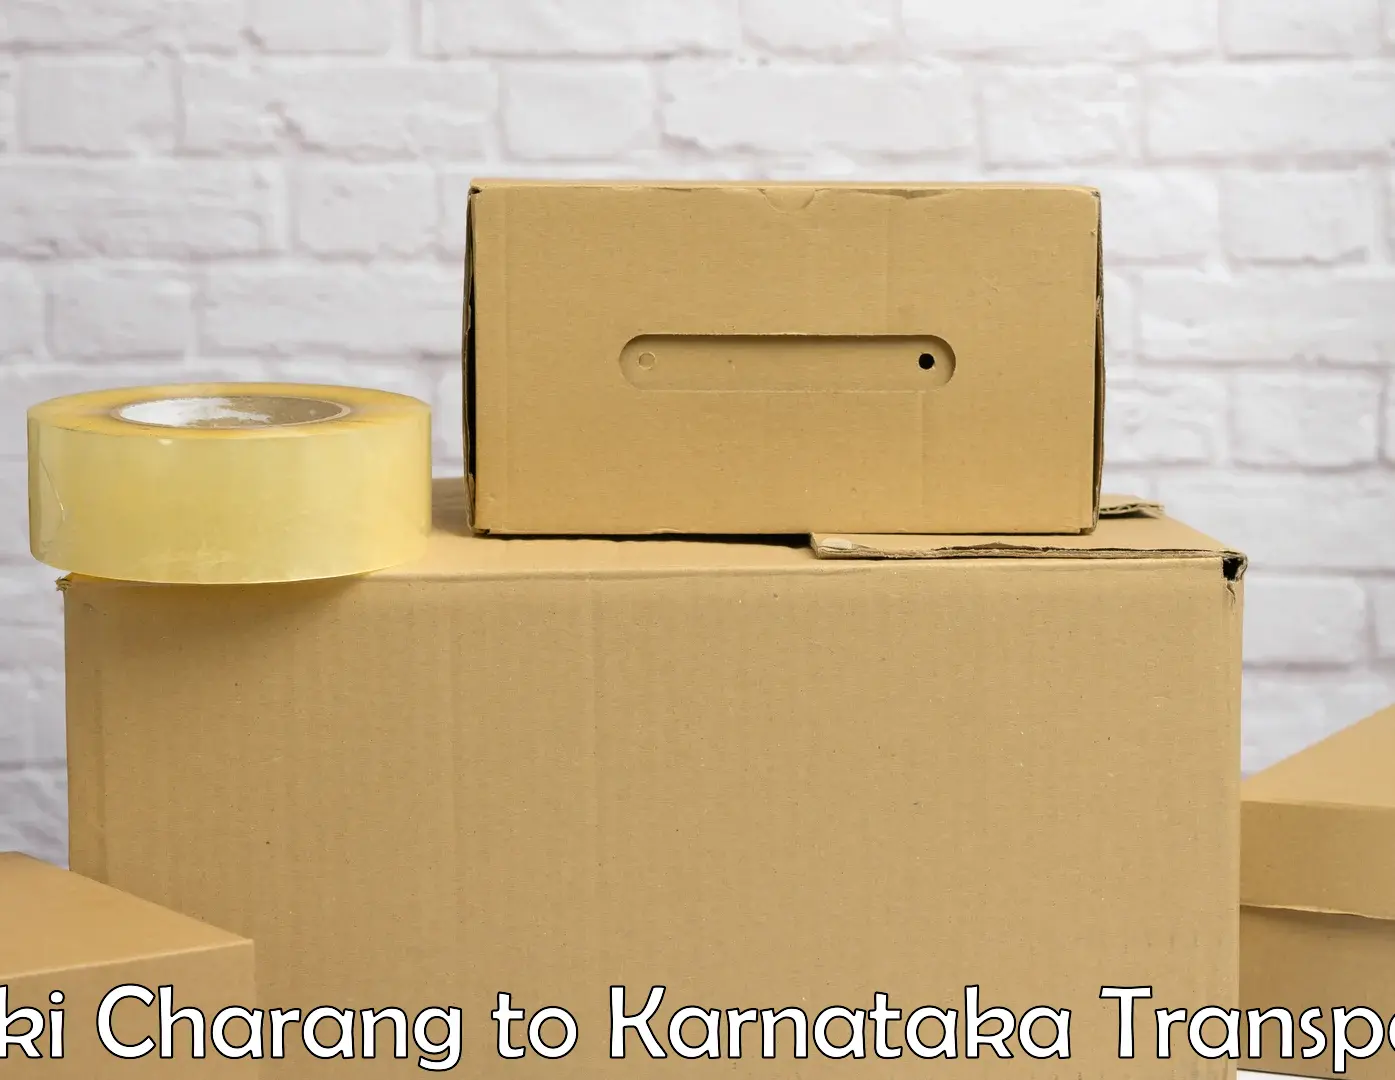 Furniture transport service Saki Charang to Karnataka